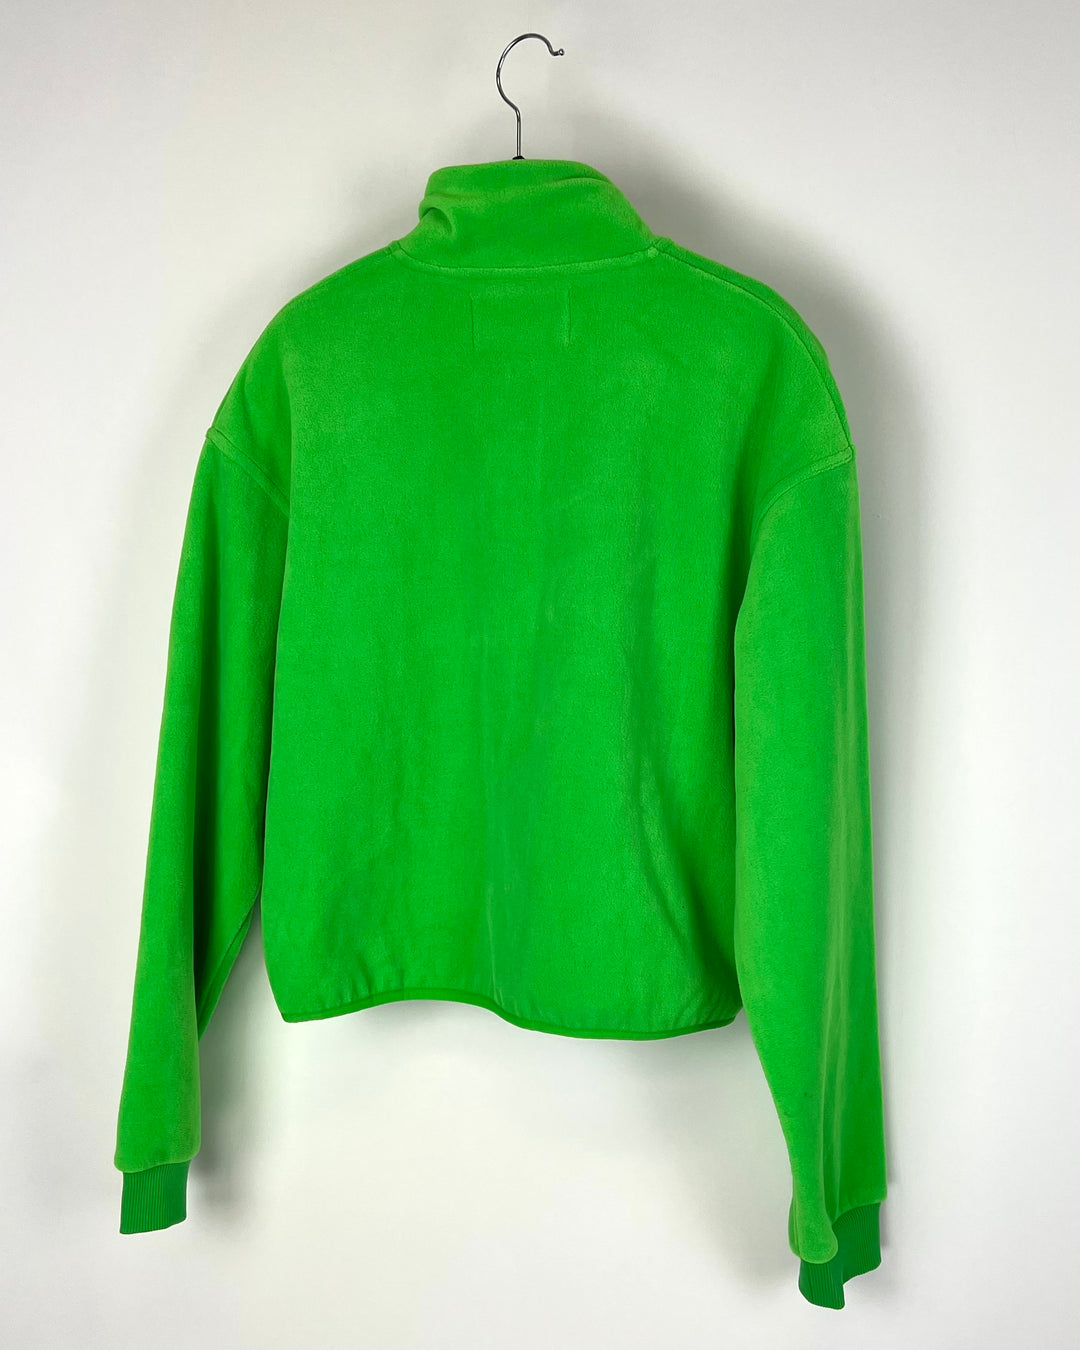 Green Fleece Pullover - Small